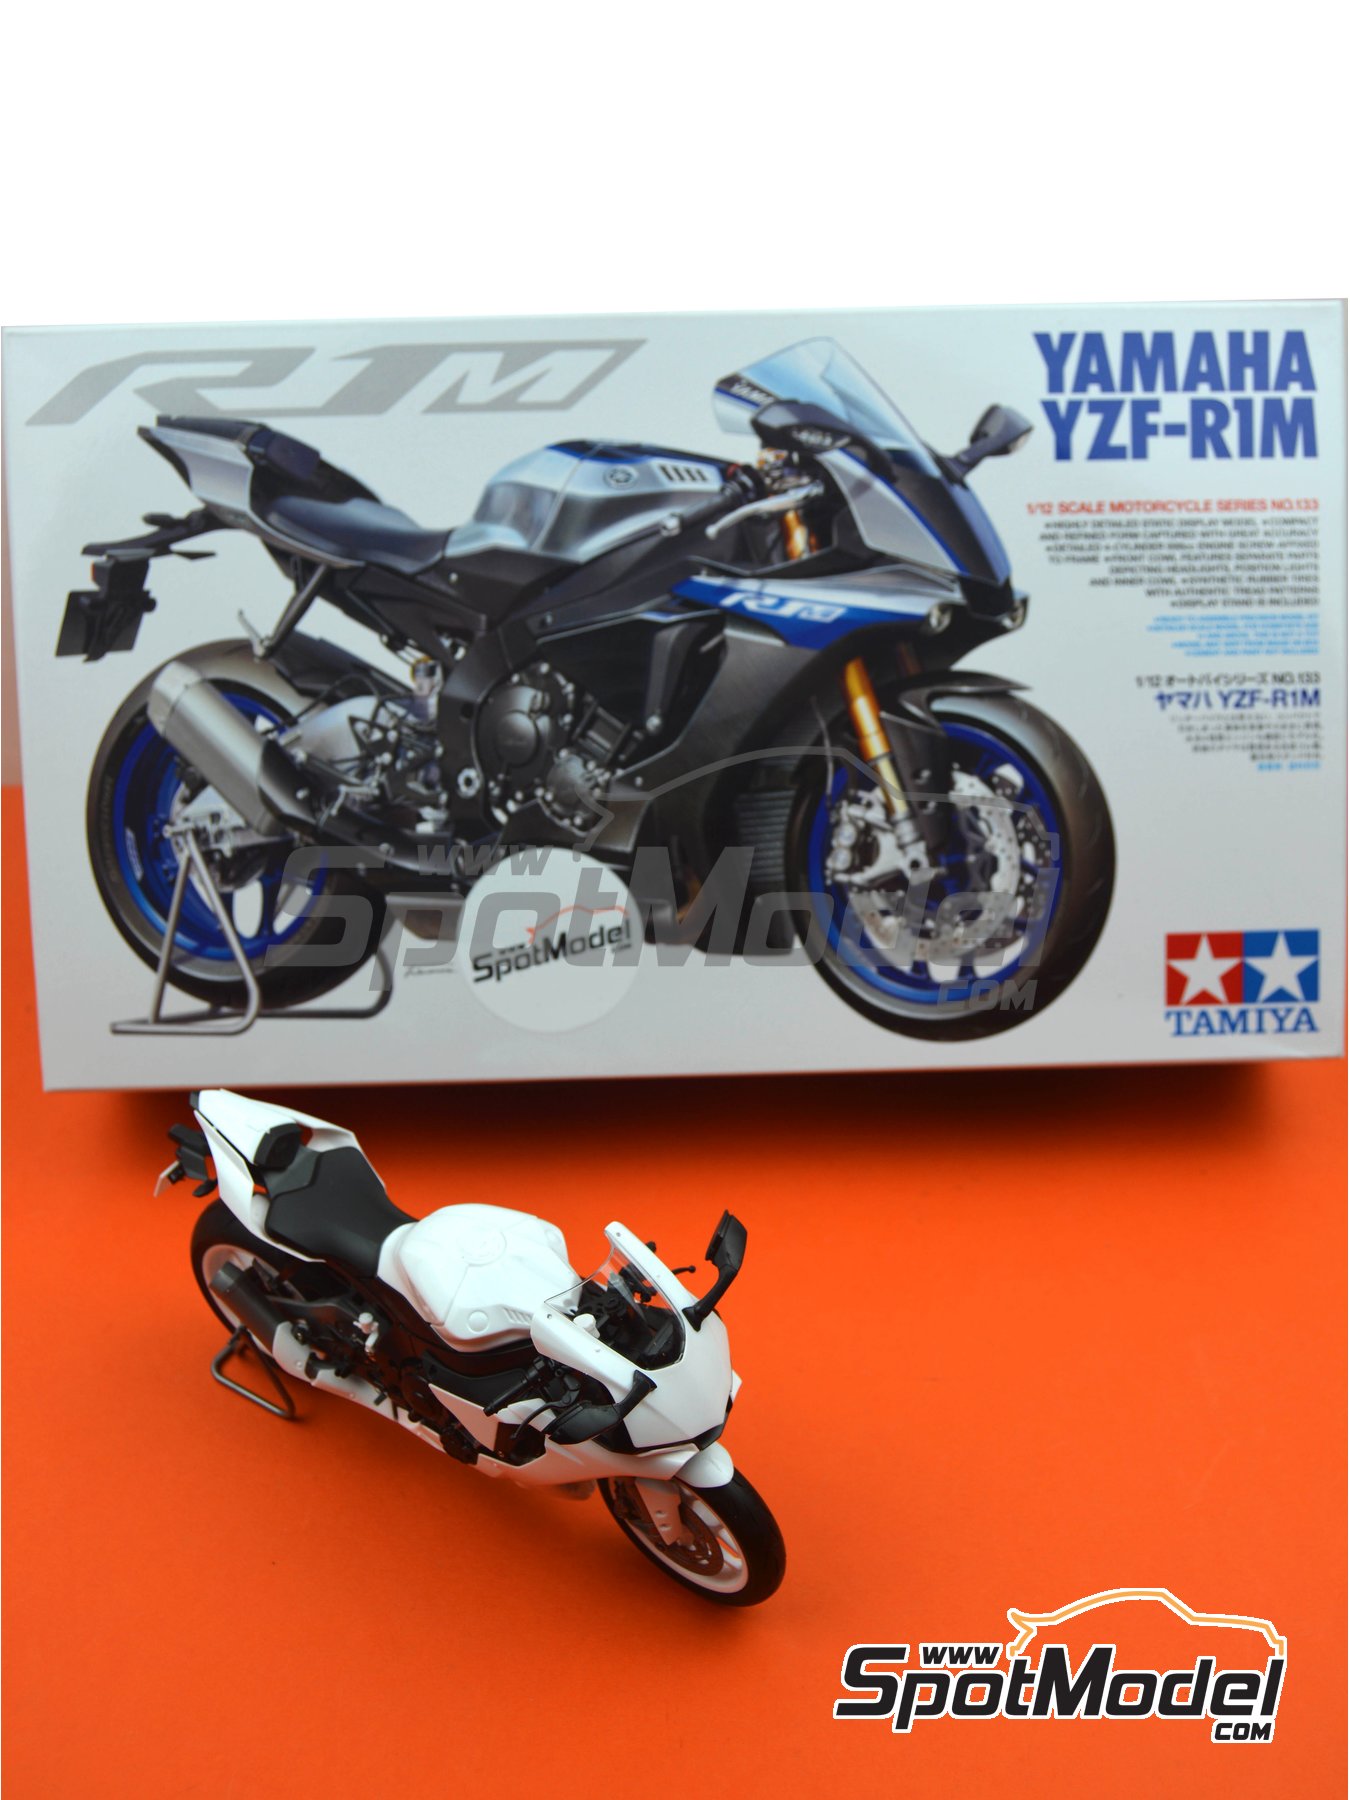 Tamiya 1/12 Yamaha YZF-R1M TAM14133 